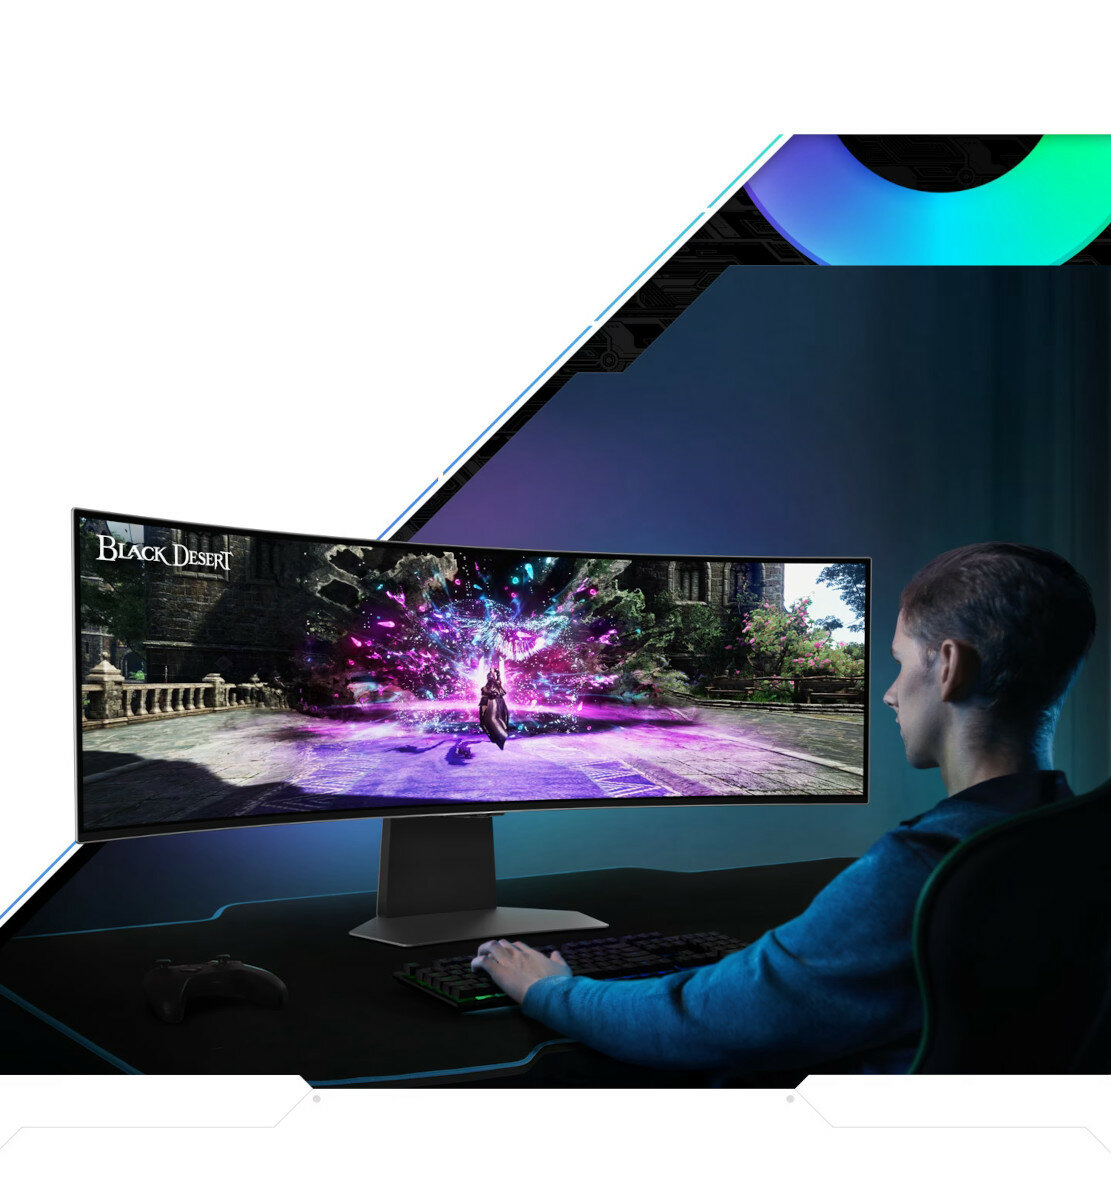 Monitor Samsung Odyssey G95SC pod skosem na biurku i grający w grę mężczyzna przed monitorem